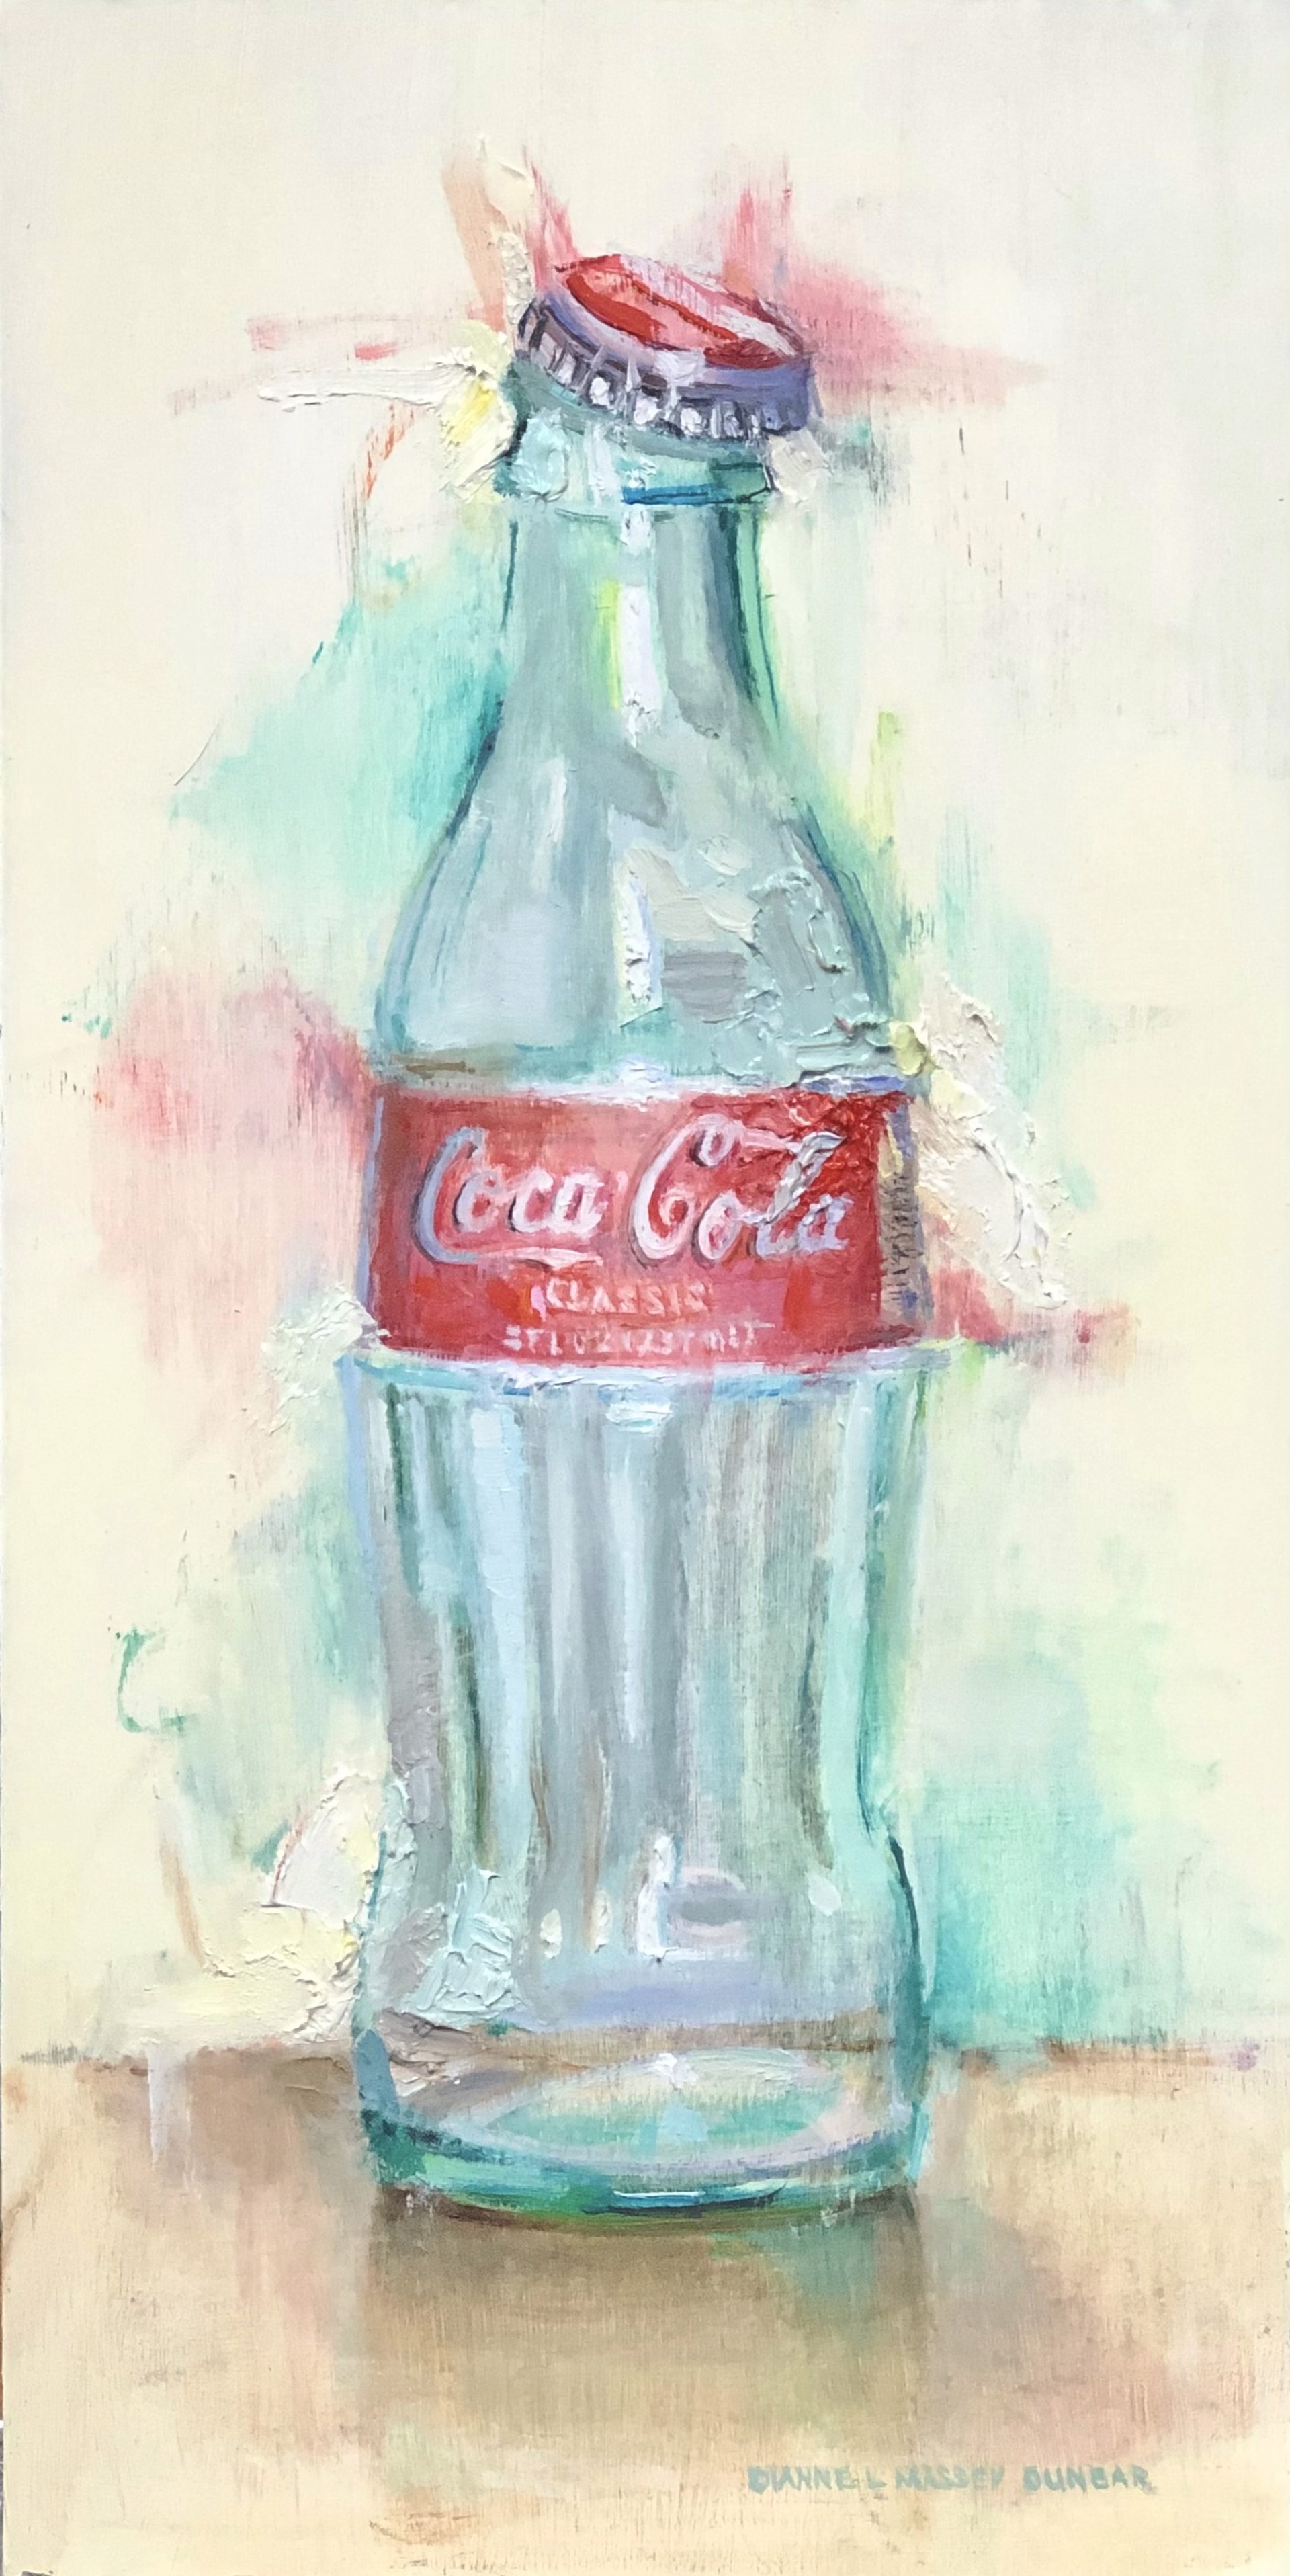 Coke Bottle by Dianne L Massey Dunbar